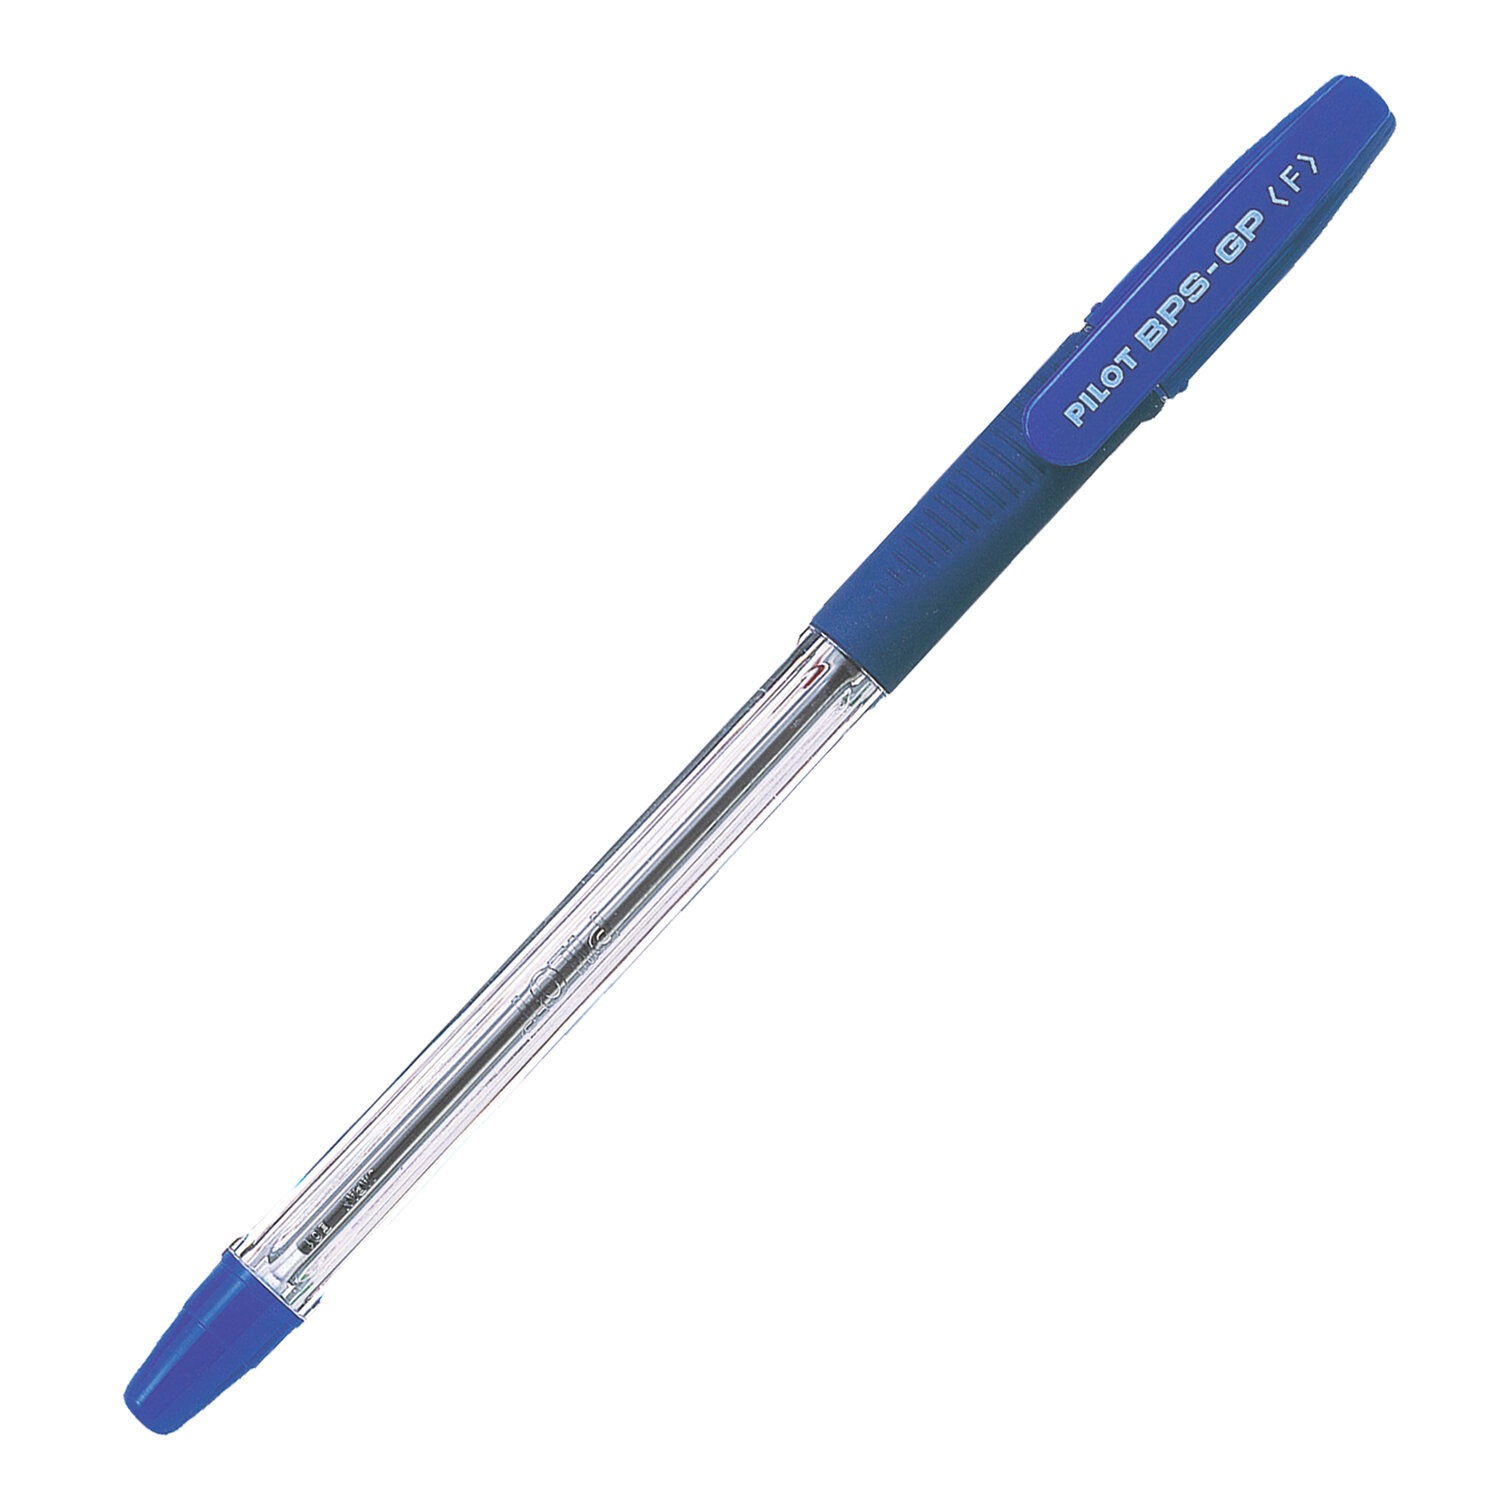 картинка Ручка шариковая масляная, 0,7 мм, синяя, корп. прозрачный, грип, "BPS-GP", Pilot, BPS-GP-F от магазина Альфанит в Кунгуре